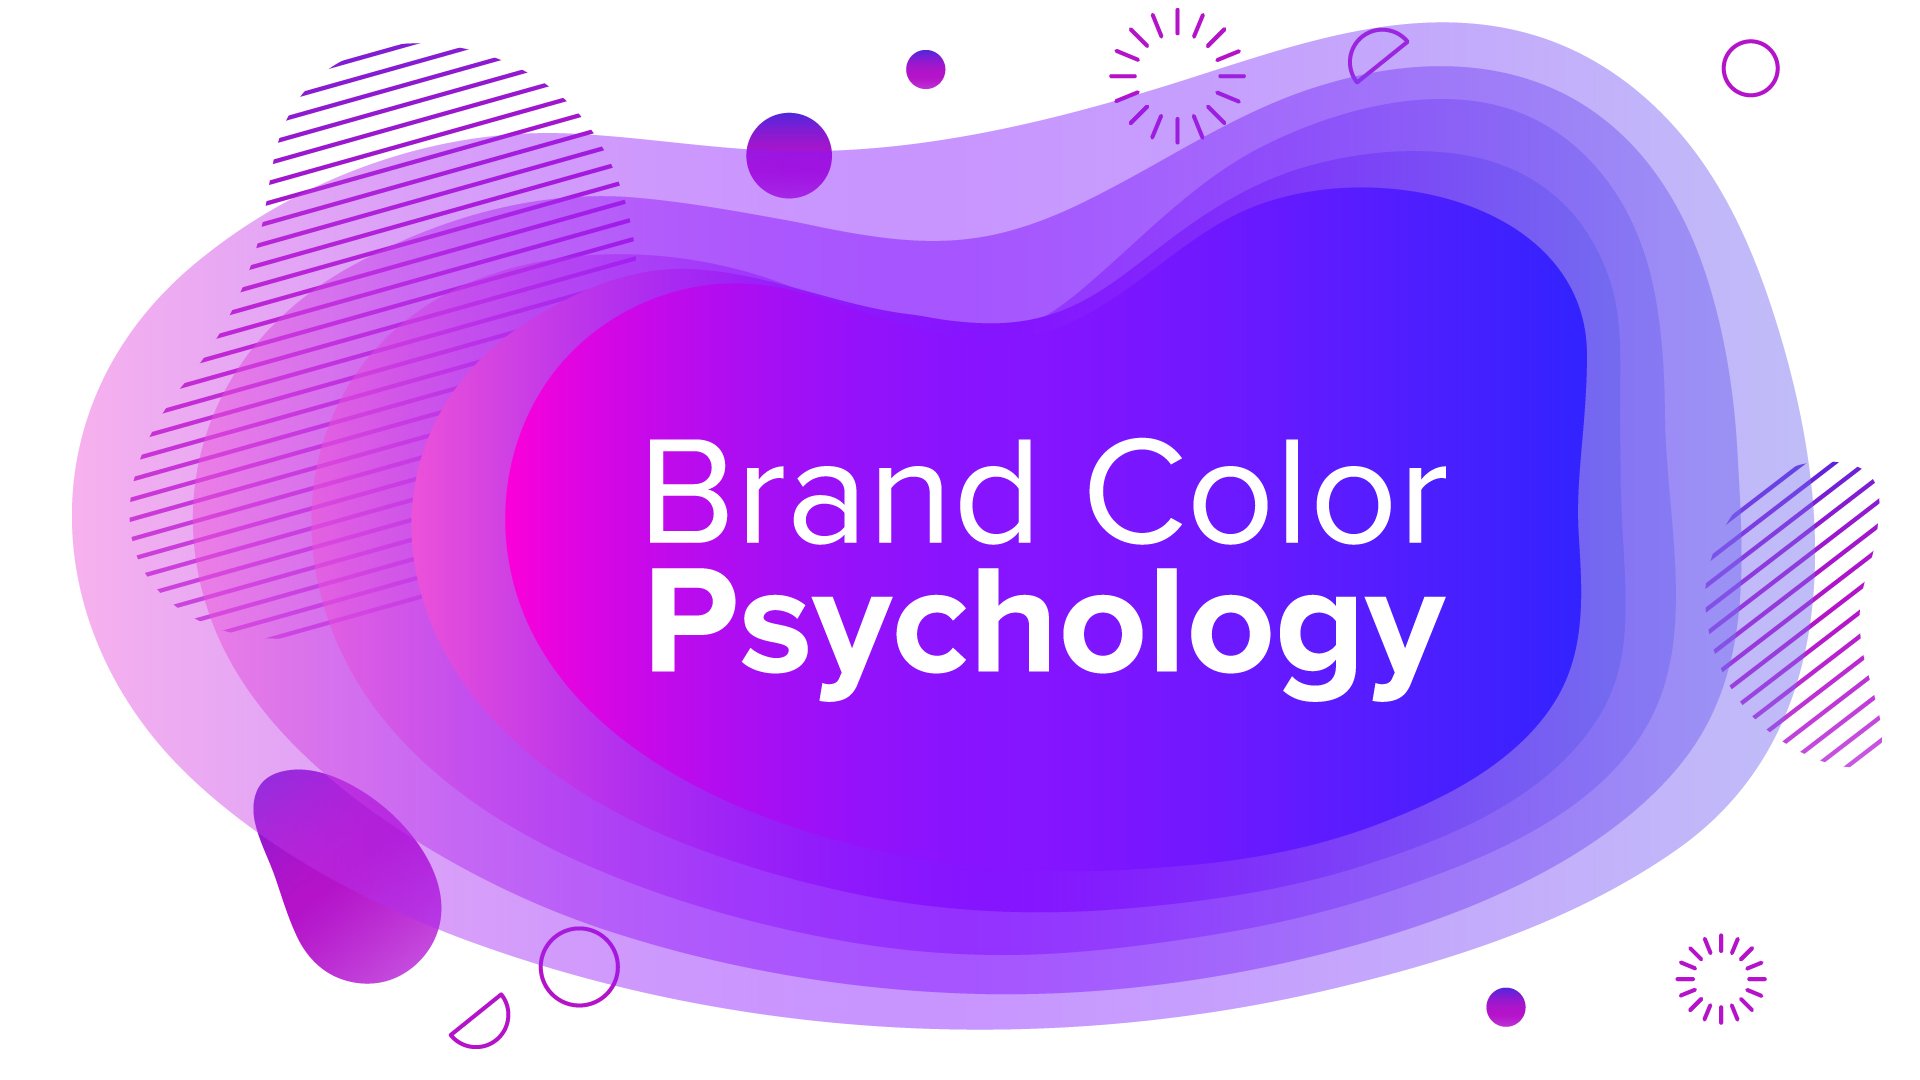 School Girl Xerox Video - Brand Color Psychology: Men vs. Women